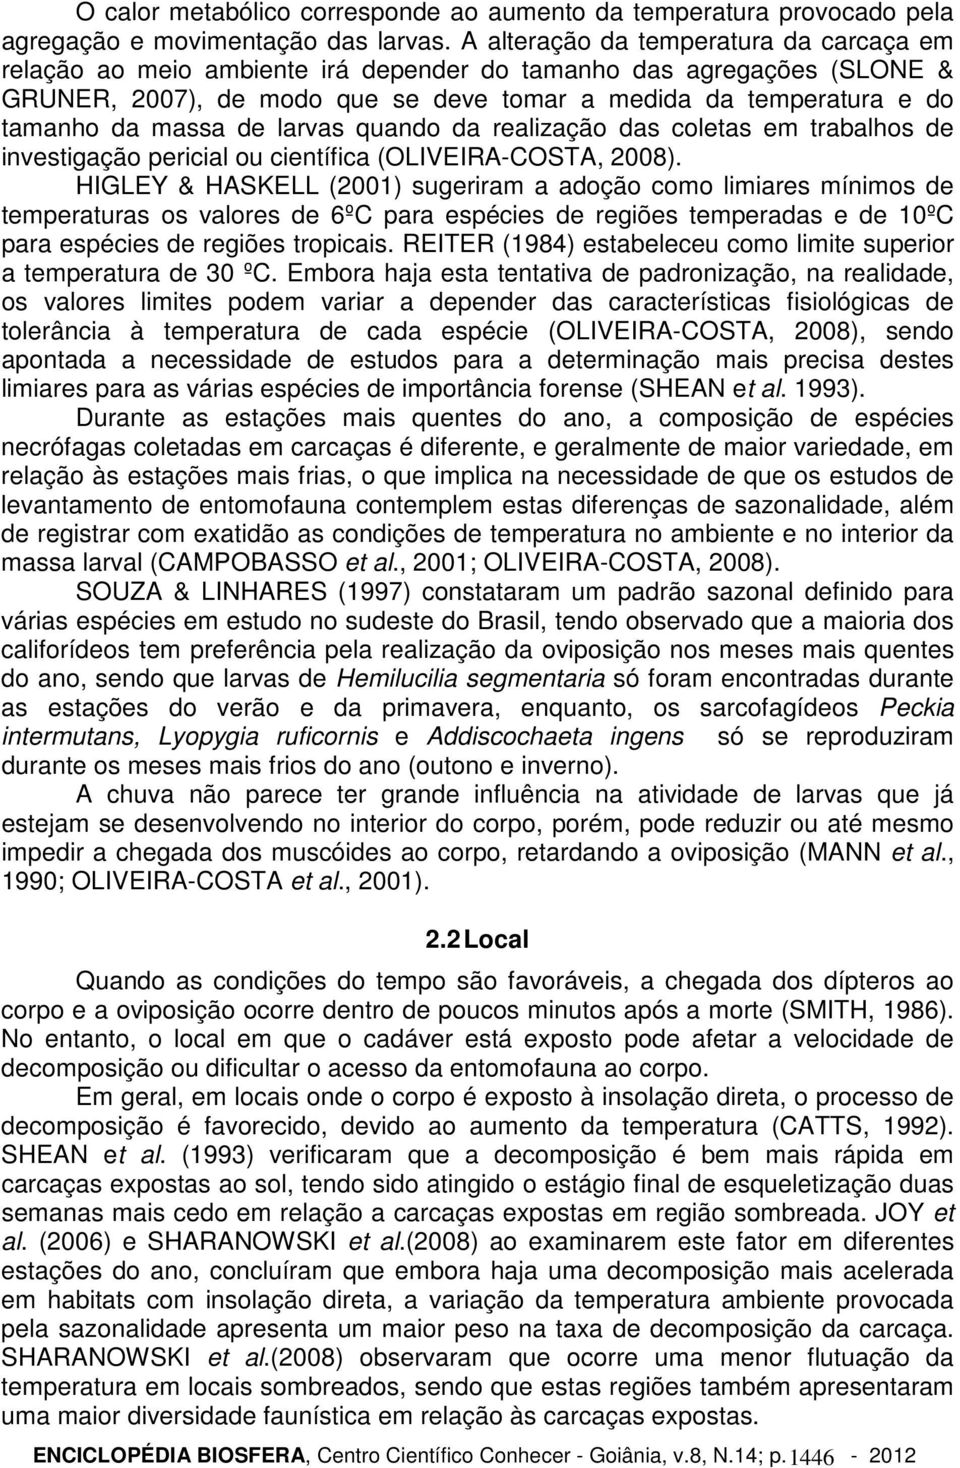 massa de larvas quando da realização das coletas em trabalhos de investigação pericial ou científica (OLIVEIRA-COSTA, 2008).